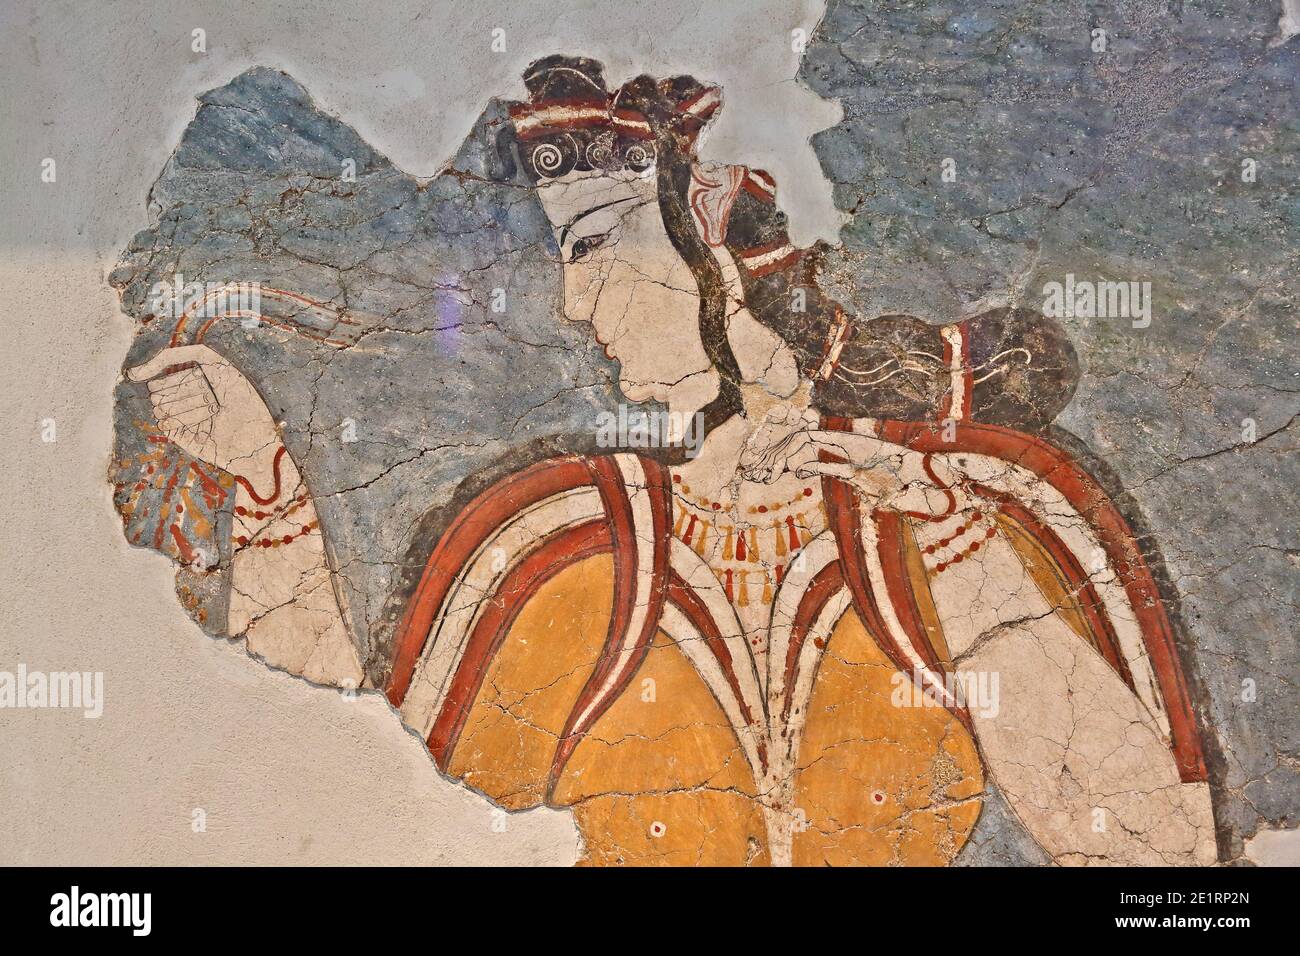 Die Dame von Mykene, altes Fresko des 13. Jahrhunderts v. Chr., von der Akropolis von Mykene, jetzt im Archäologischen Museum von Athen, Griechenland ausgestellt Stockfoto